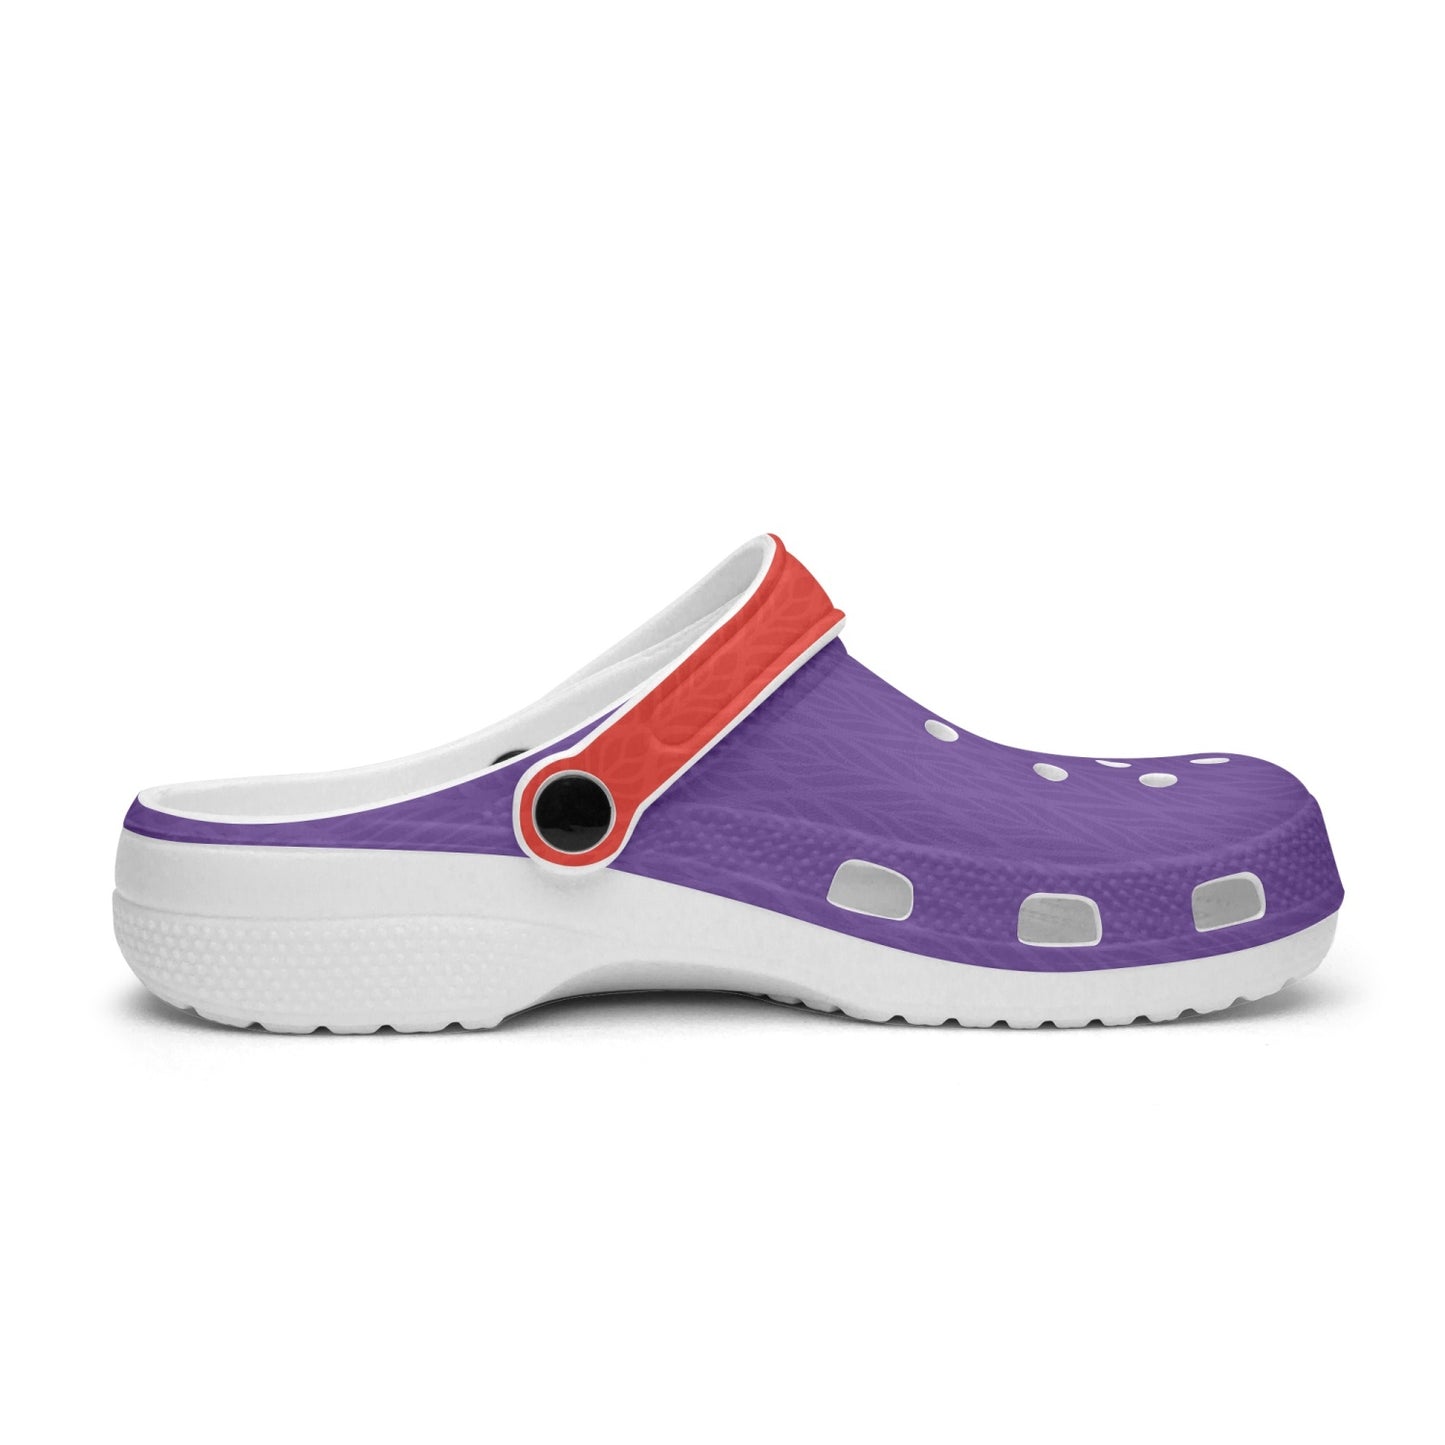 Fiorentina Clogs shoes